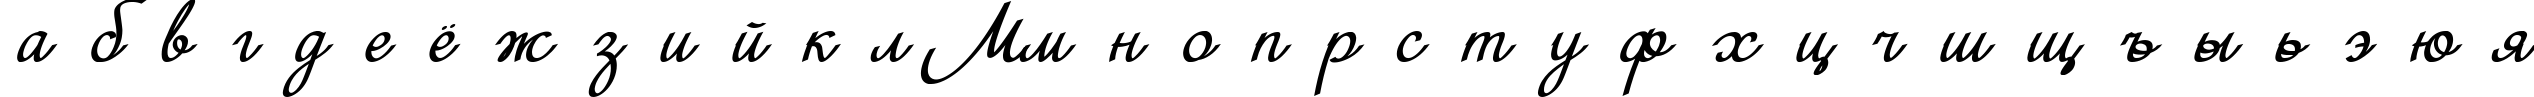 Пример написания русского алфавита шрифтом MiniDemo